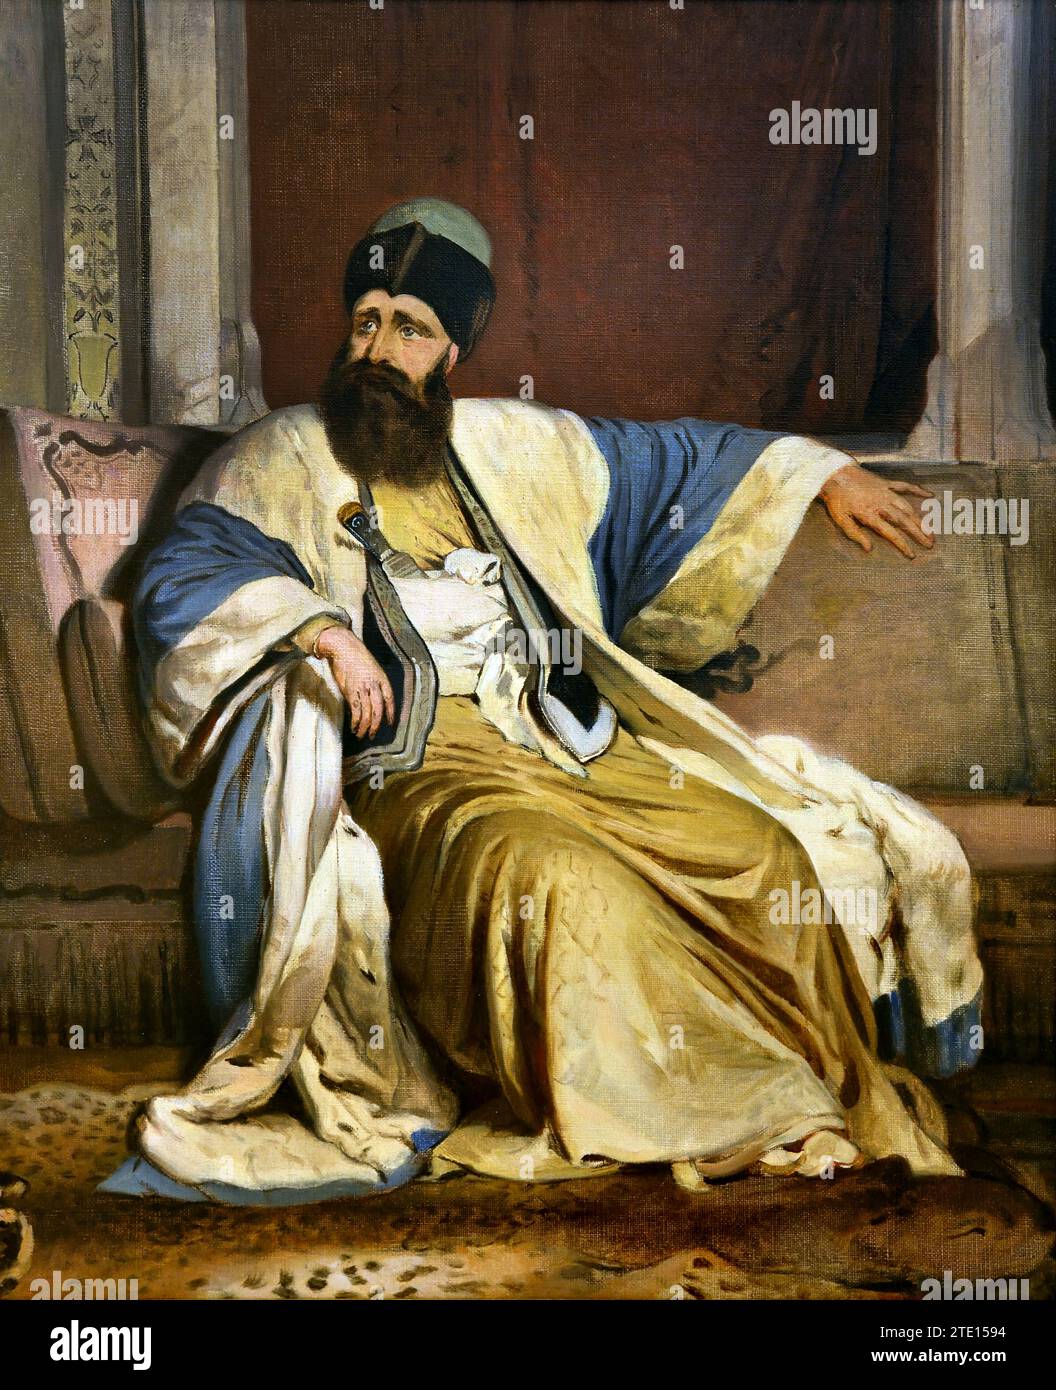 Lytras Nicéphore (1832 - 1904) Michael Vodas Soutzos, peinture 19RRT-20e siècle, Galerie nationale, Athènes, Grèce. Orientaliste, orientalisme Banque D'Images